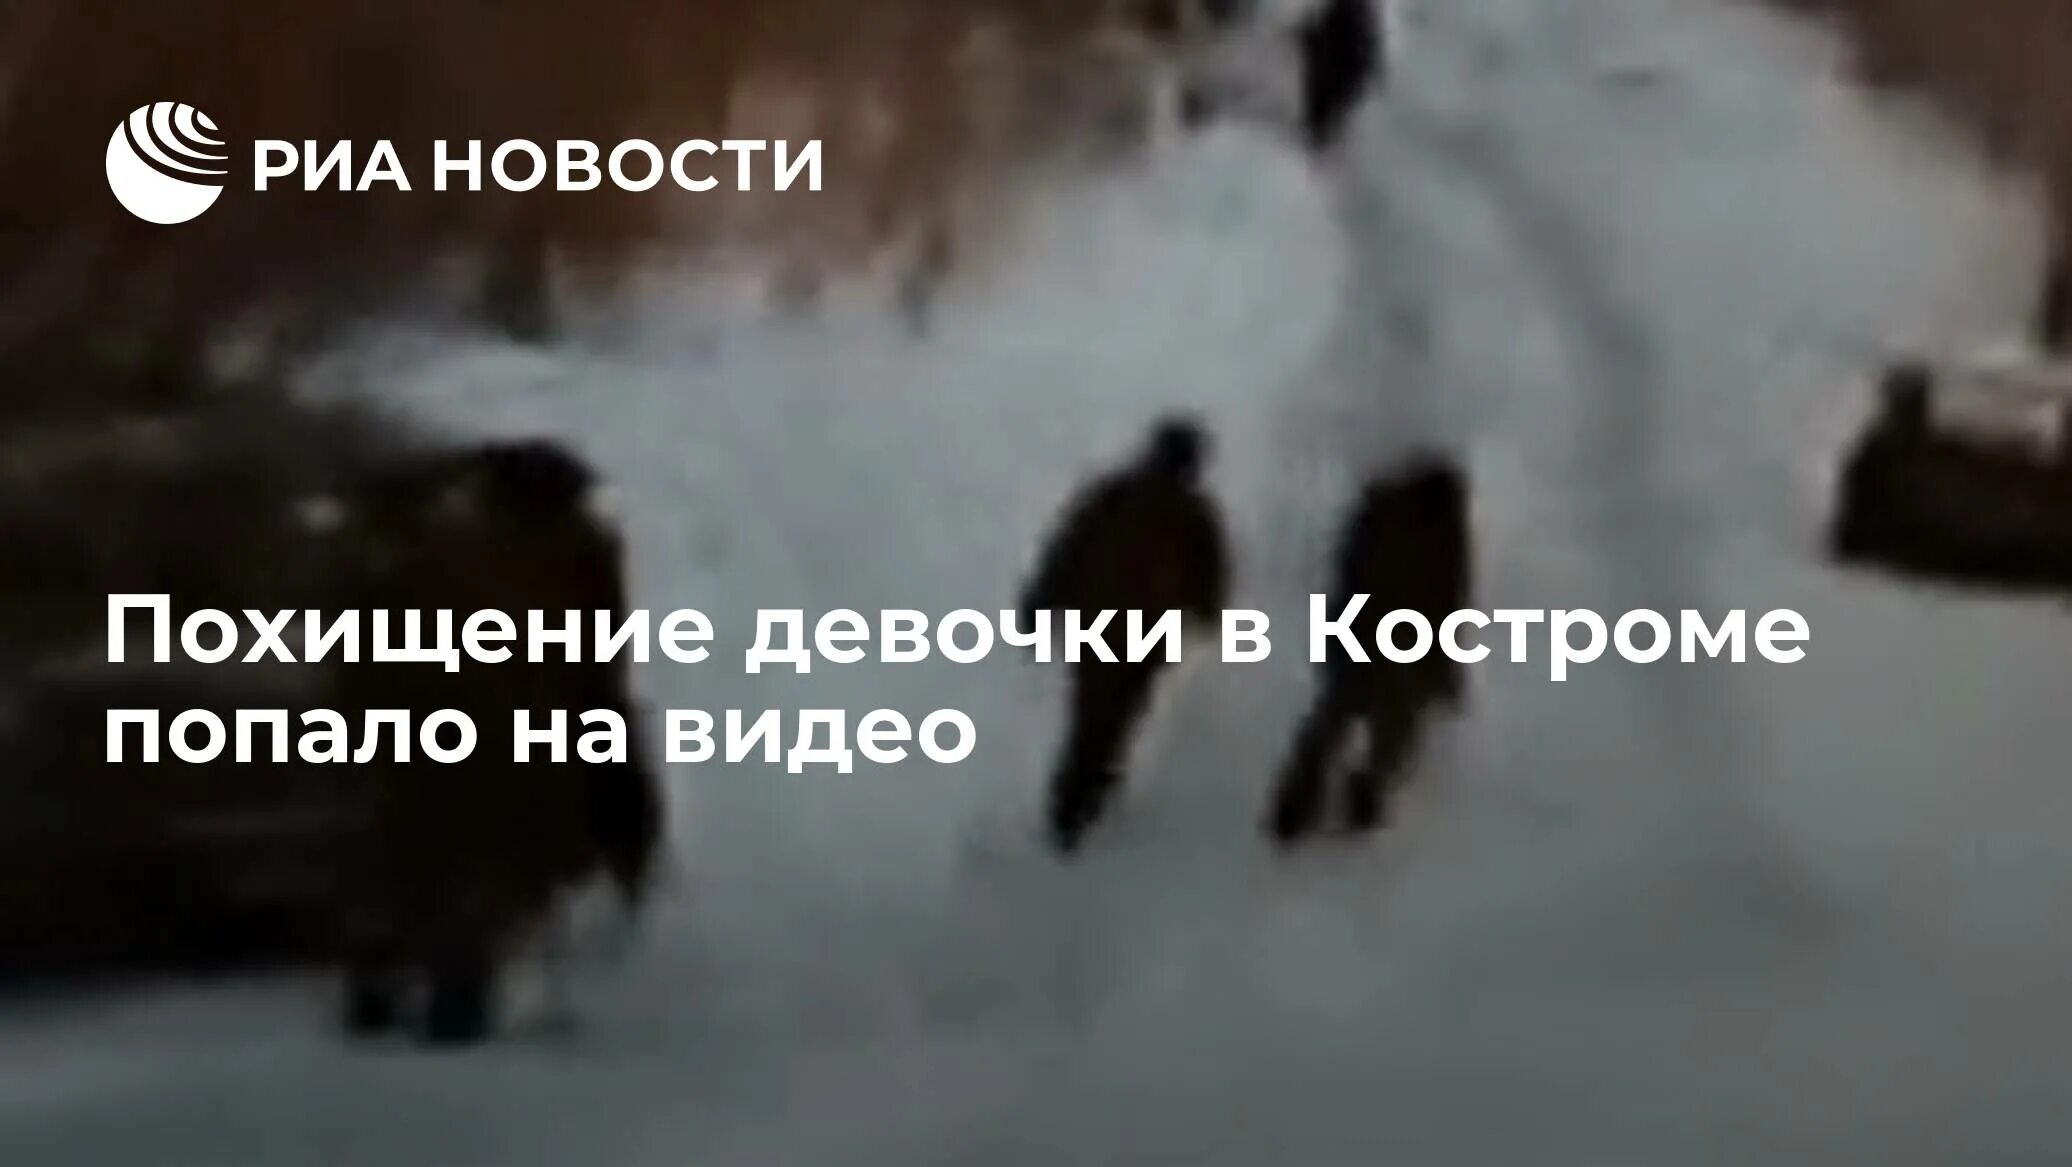 Похищение девочки в Костроме. Похищение девочки в Костроме 2022. Видео похищения девочки в Костроме. Похищение девочки в Костроме попало на видео.